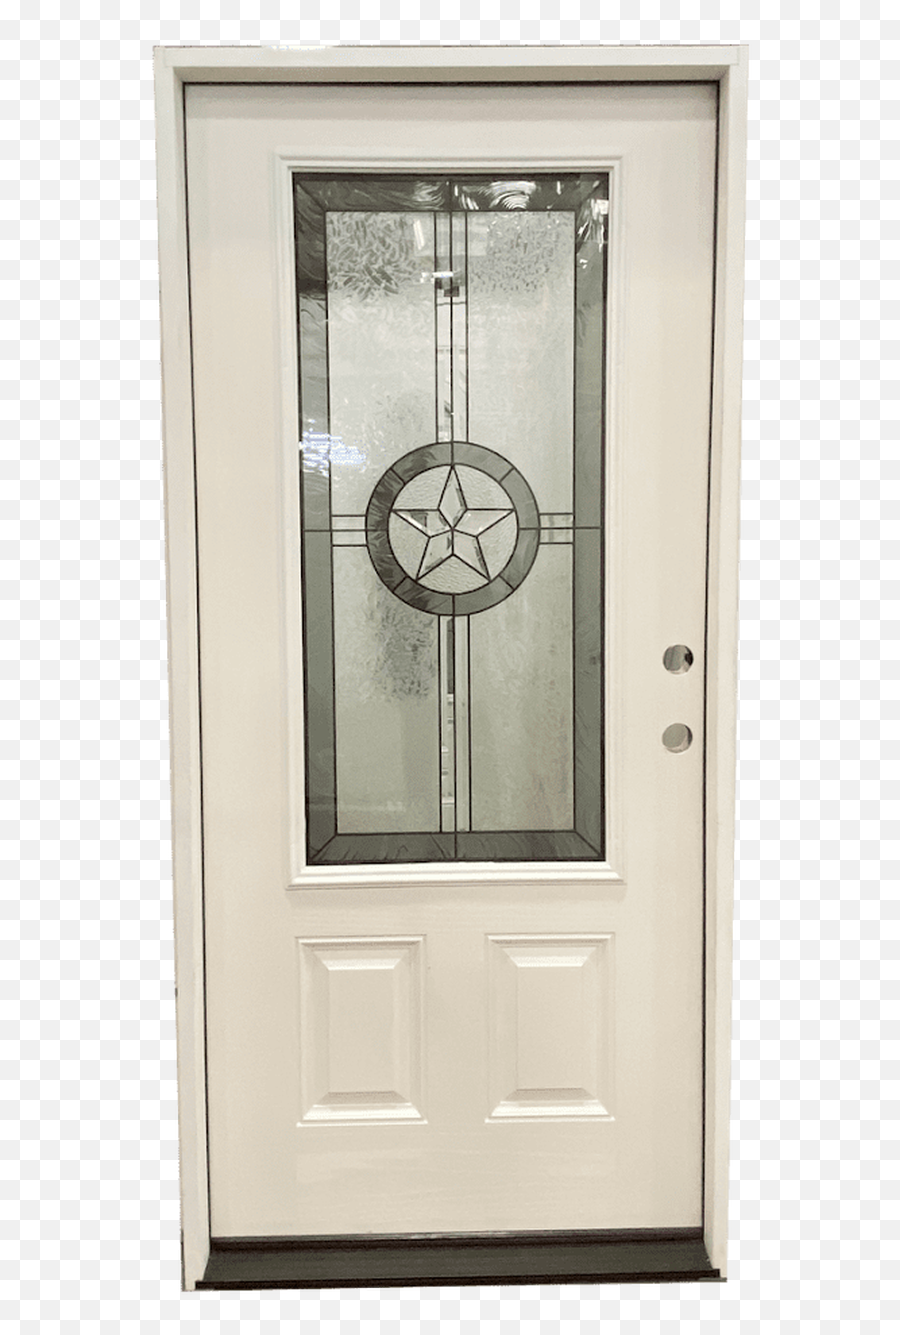 3u00270 X 6u00278 Exterior Fiberglass Door With Texas Star Lead Glass - Primed Home Door Png,Texas Star Png